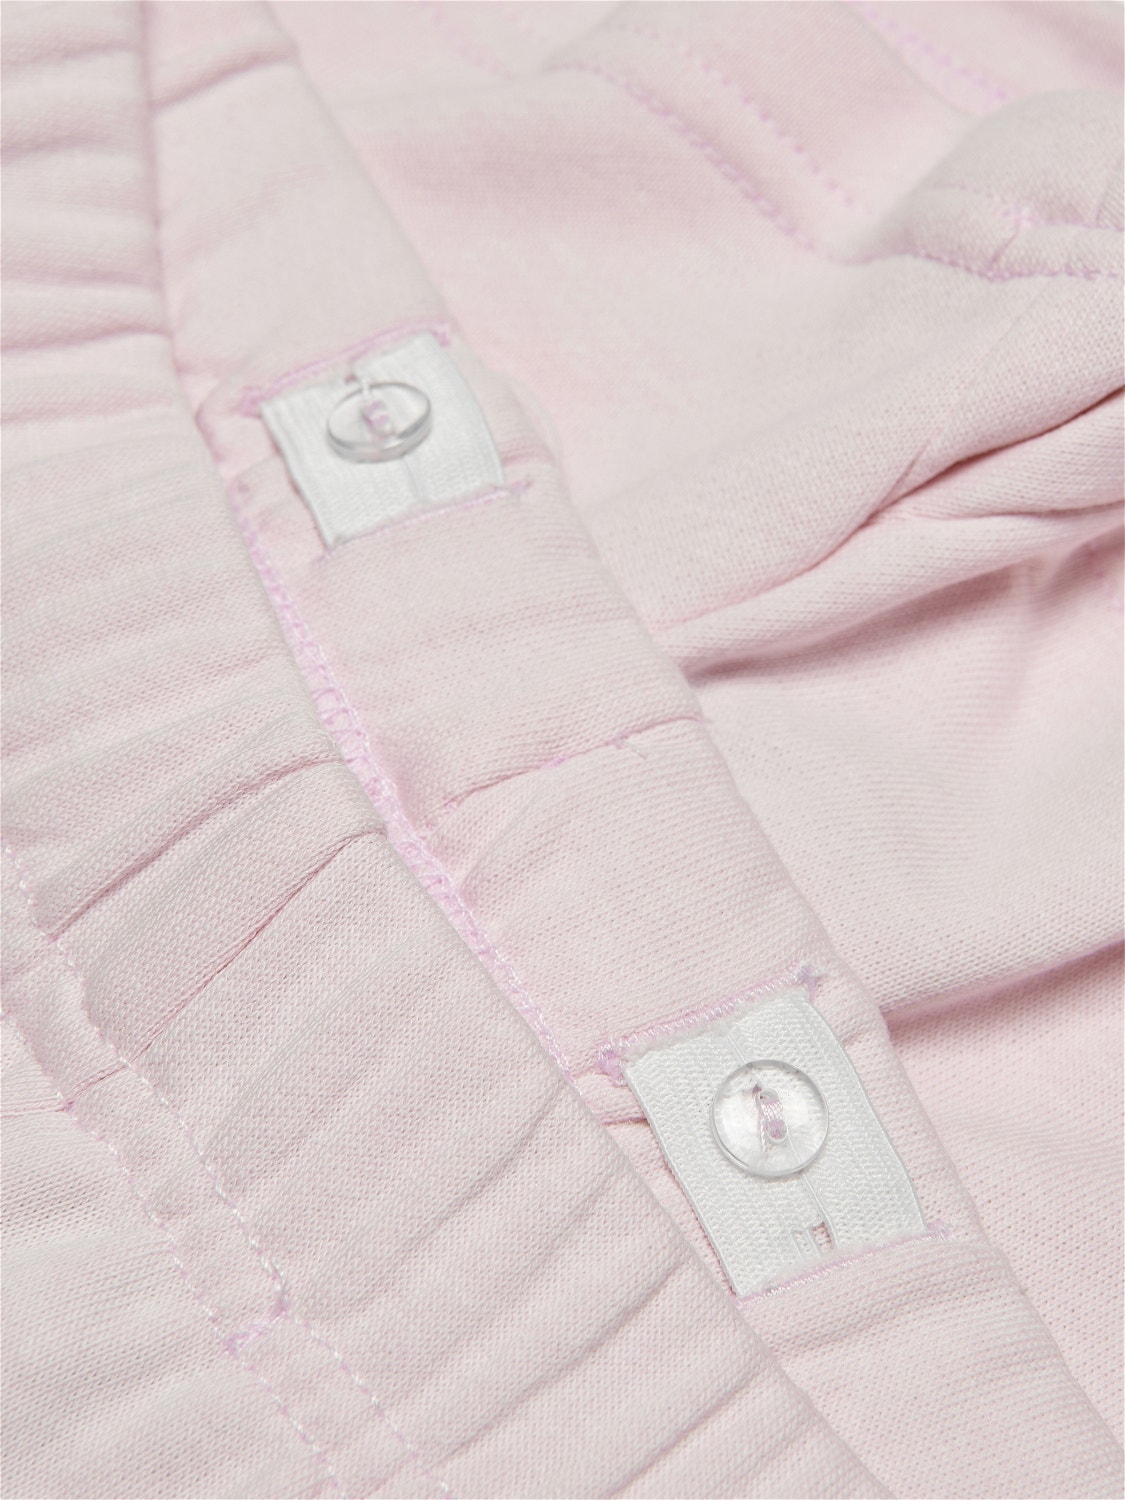 ONLY Normal geschnitten Shorts -Parfait Pink - 15250559